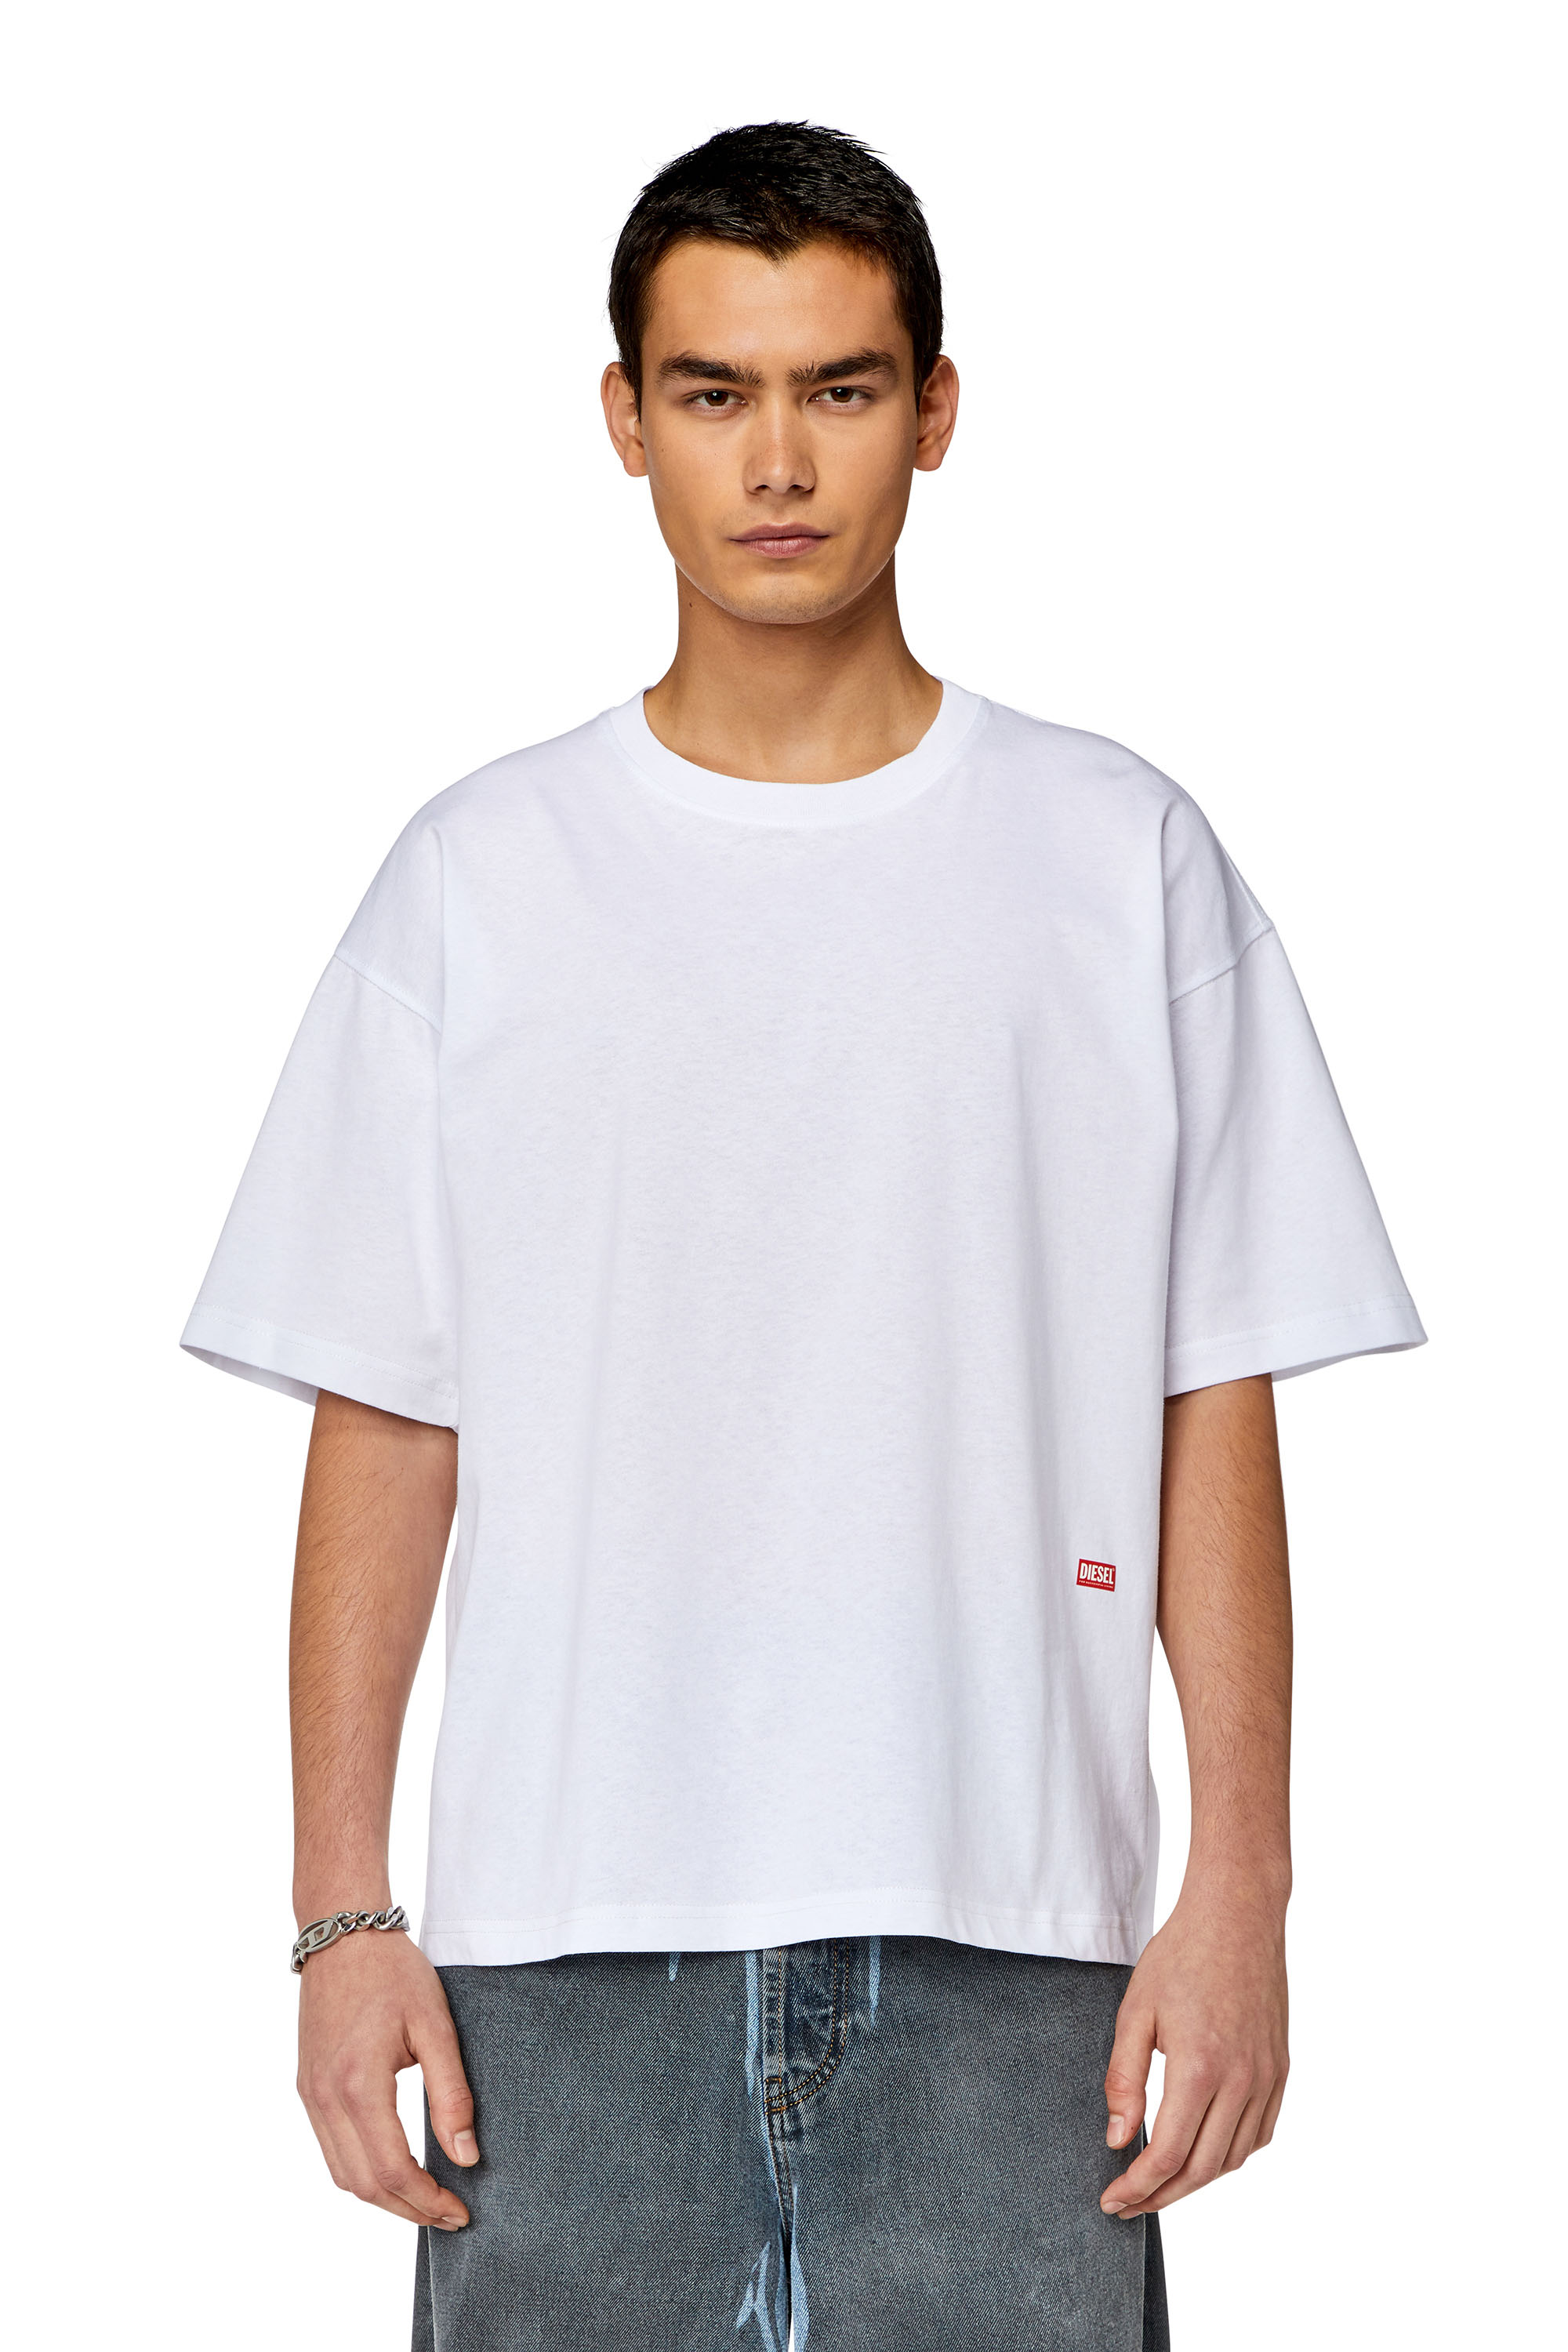 Diesel - T-BOXT-N11, Homme T-shirt avec logo imprimé photo in Blanc - Image 2